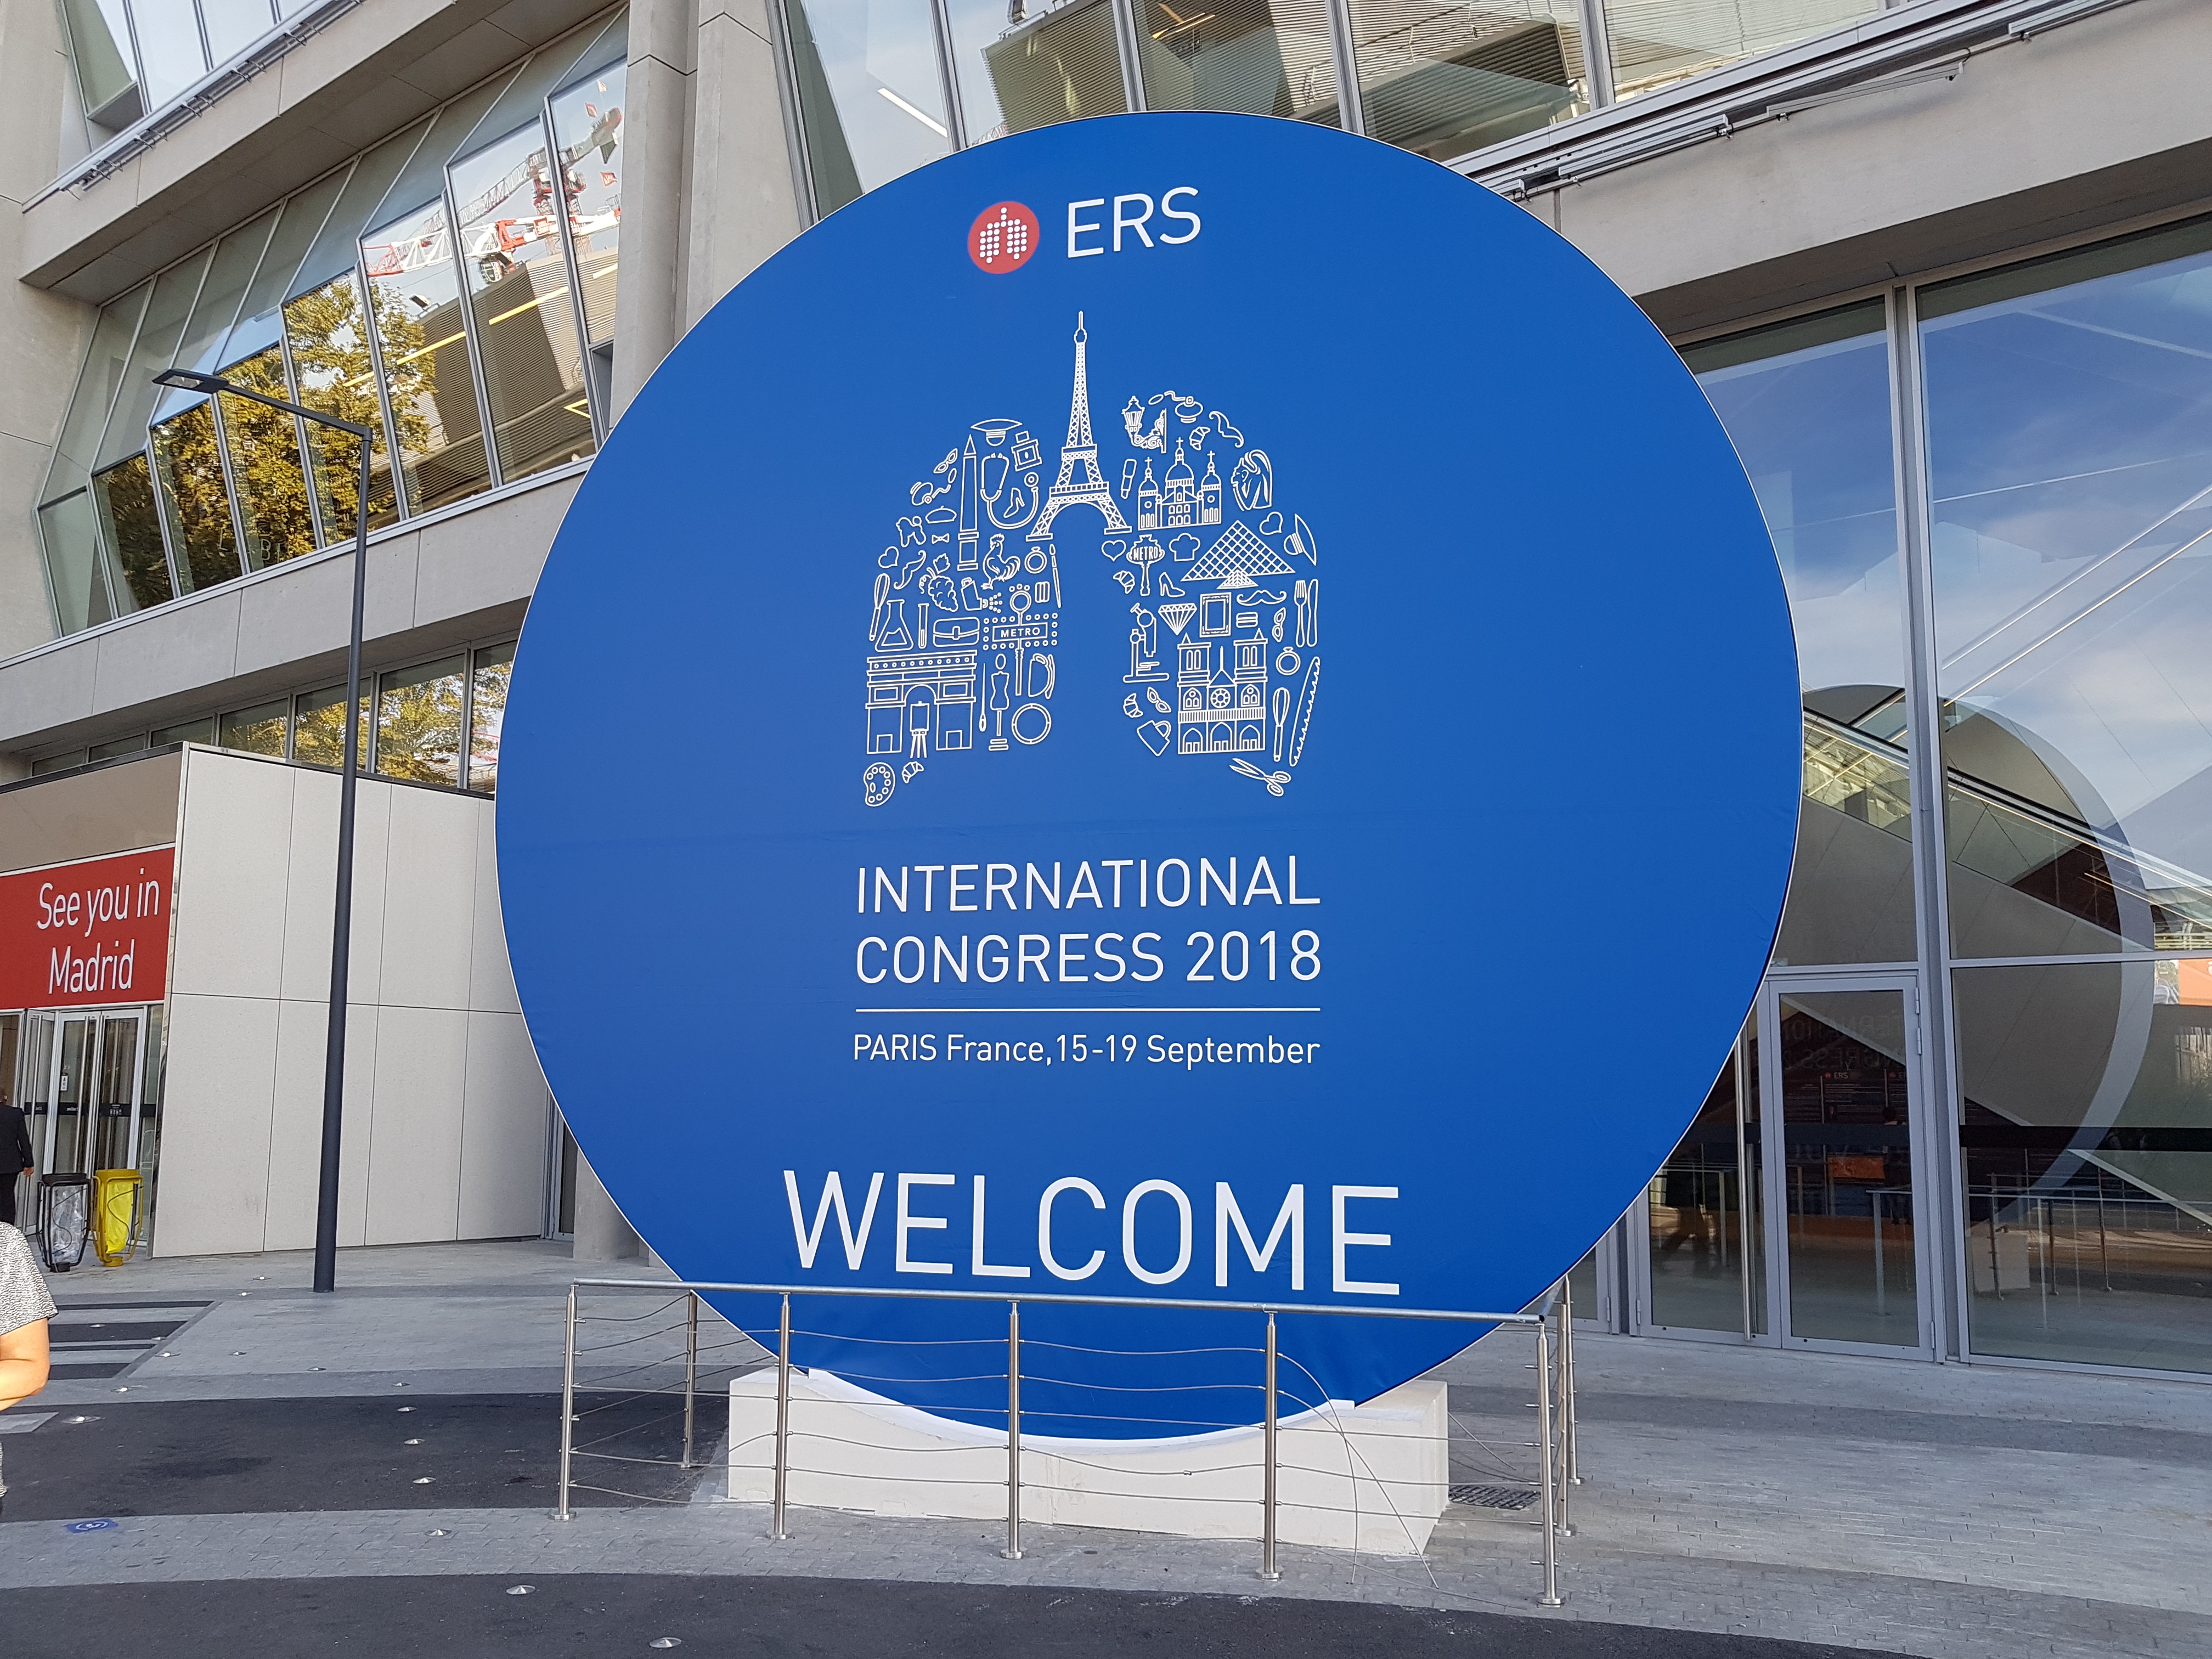 ERS Congres 2018 in Parijs